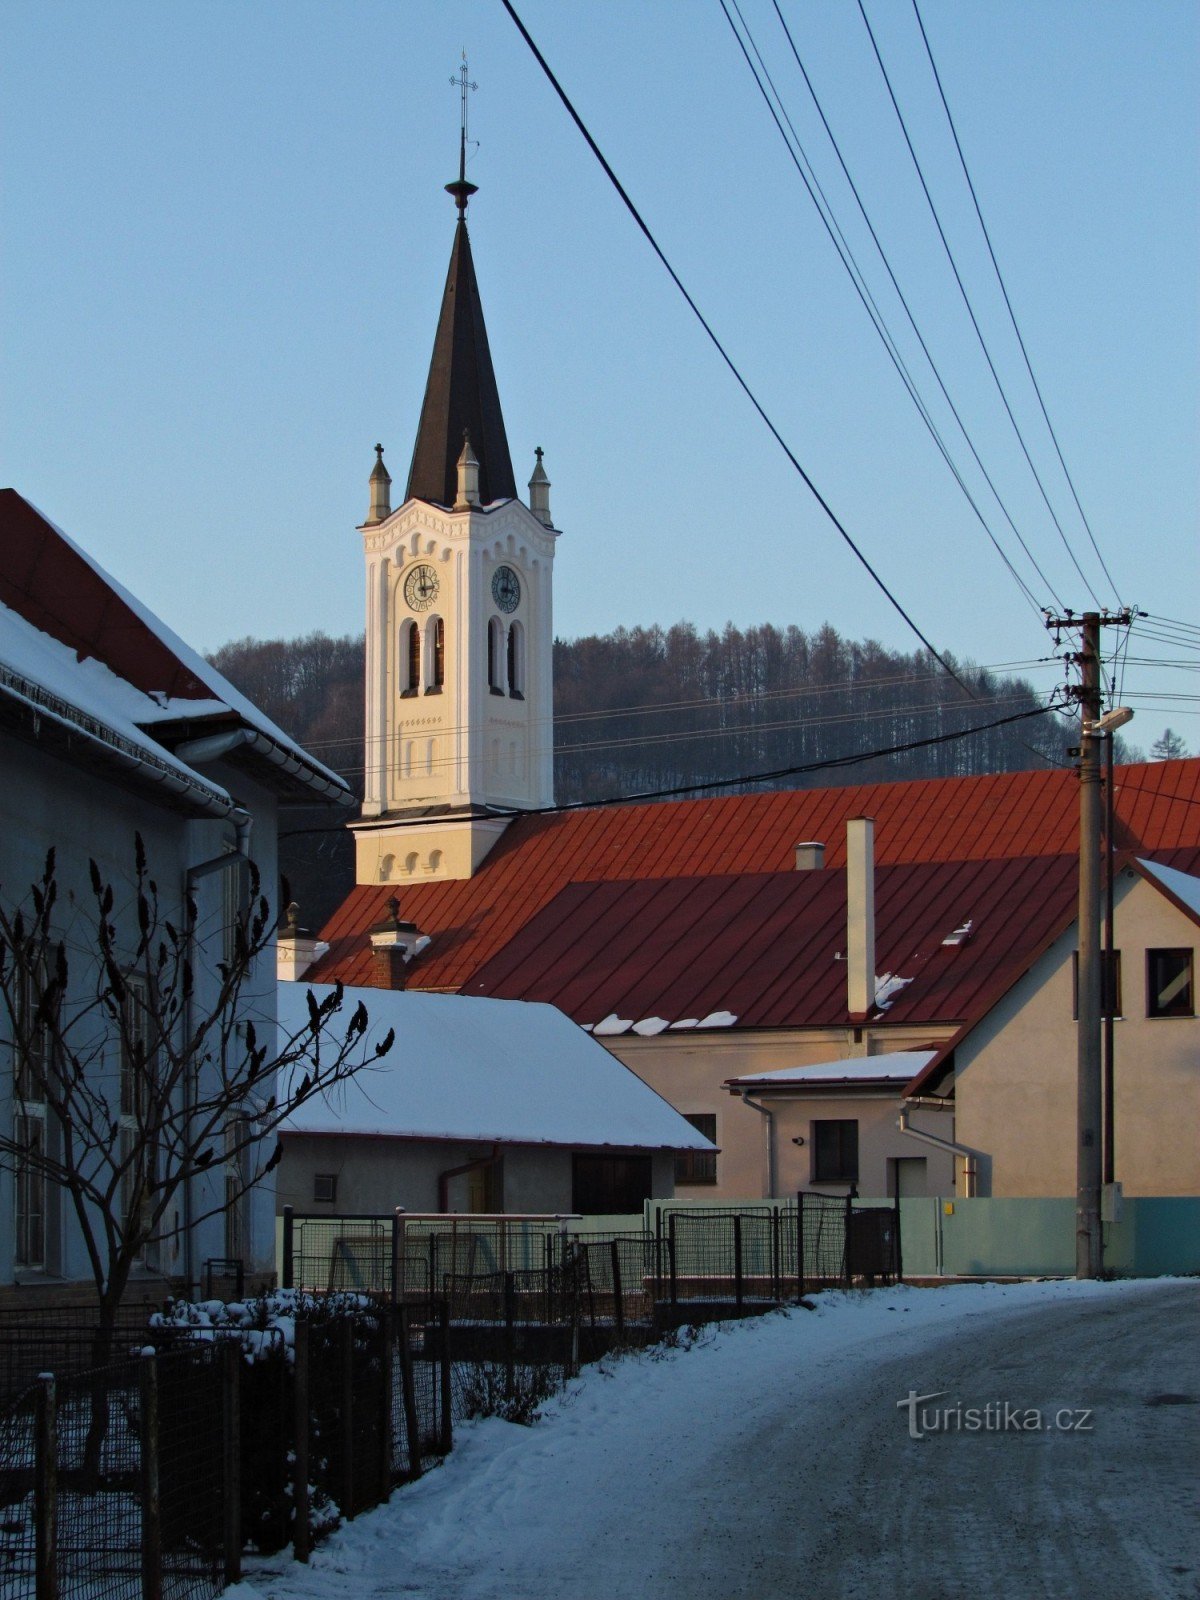 Jasenná - evankelinen kirkko